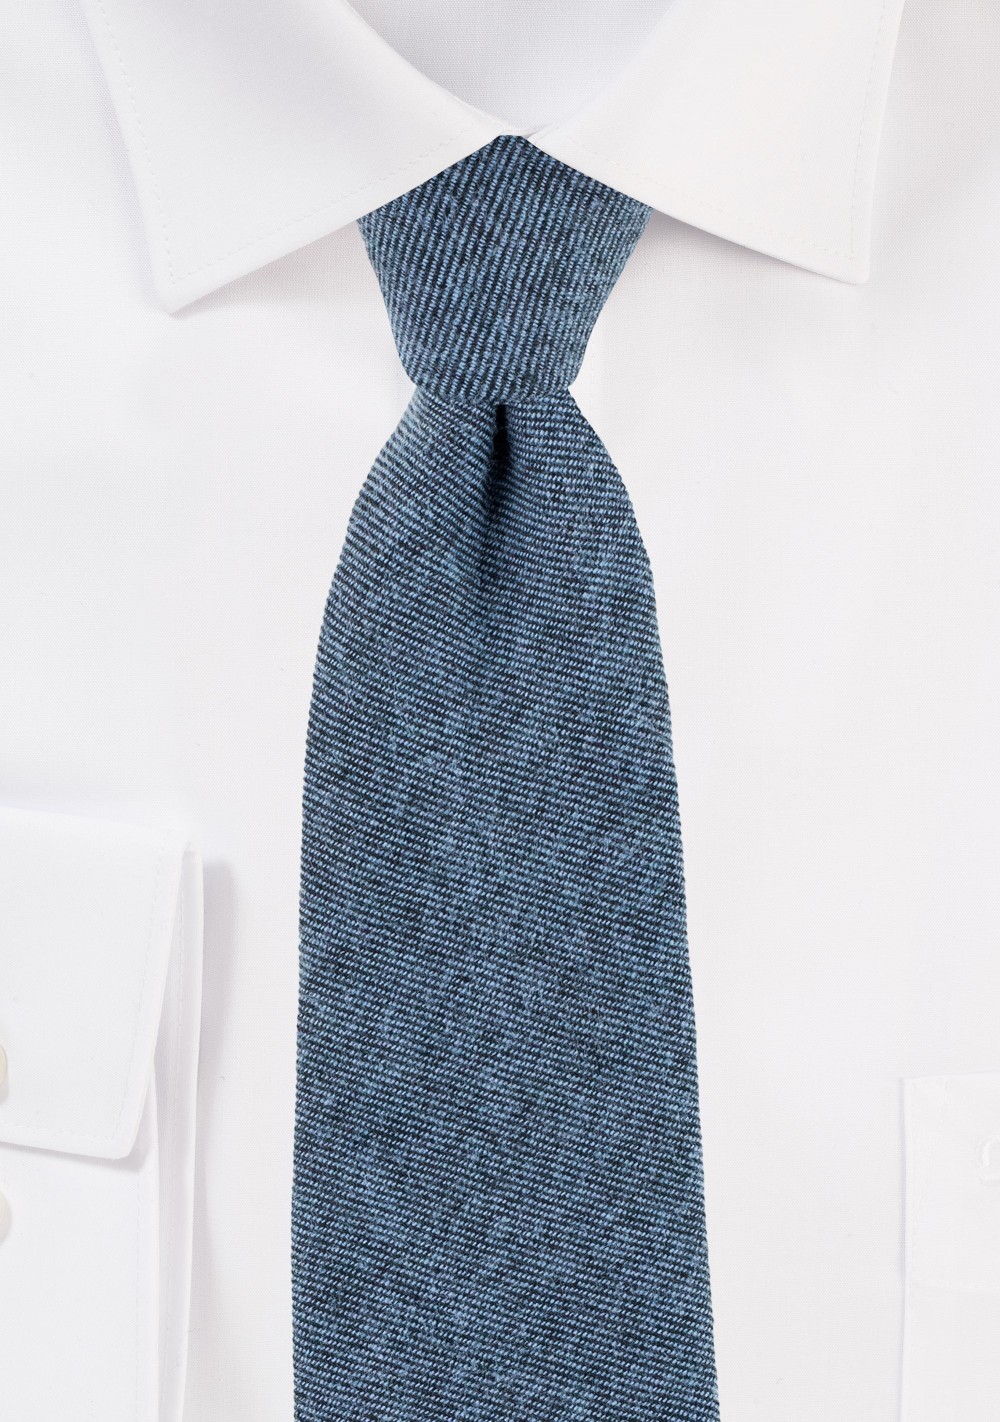 Textured Cotton Skinny Tie in Denim Blue